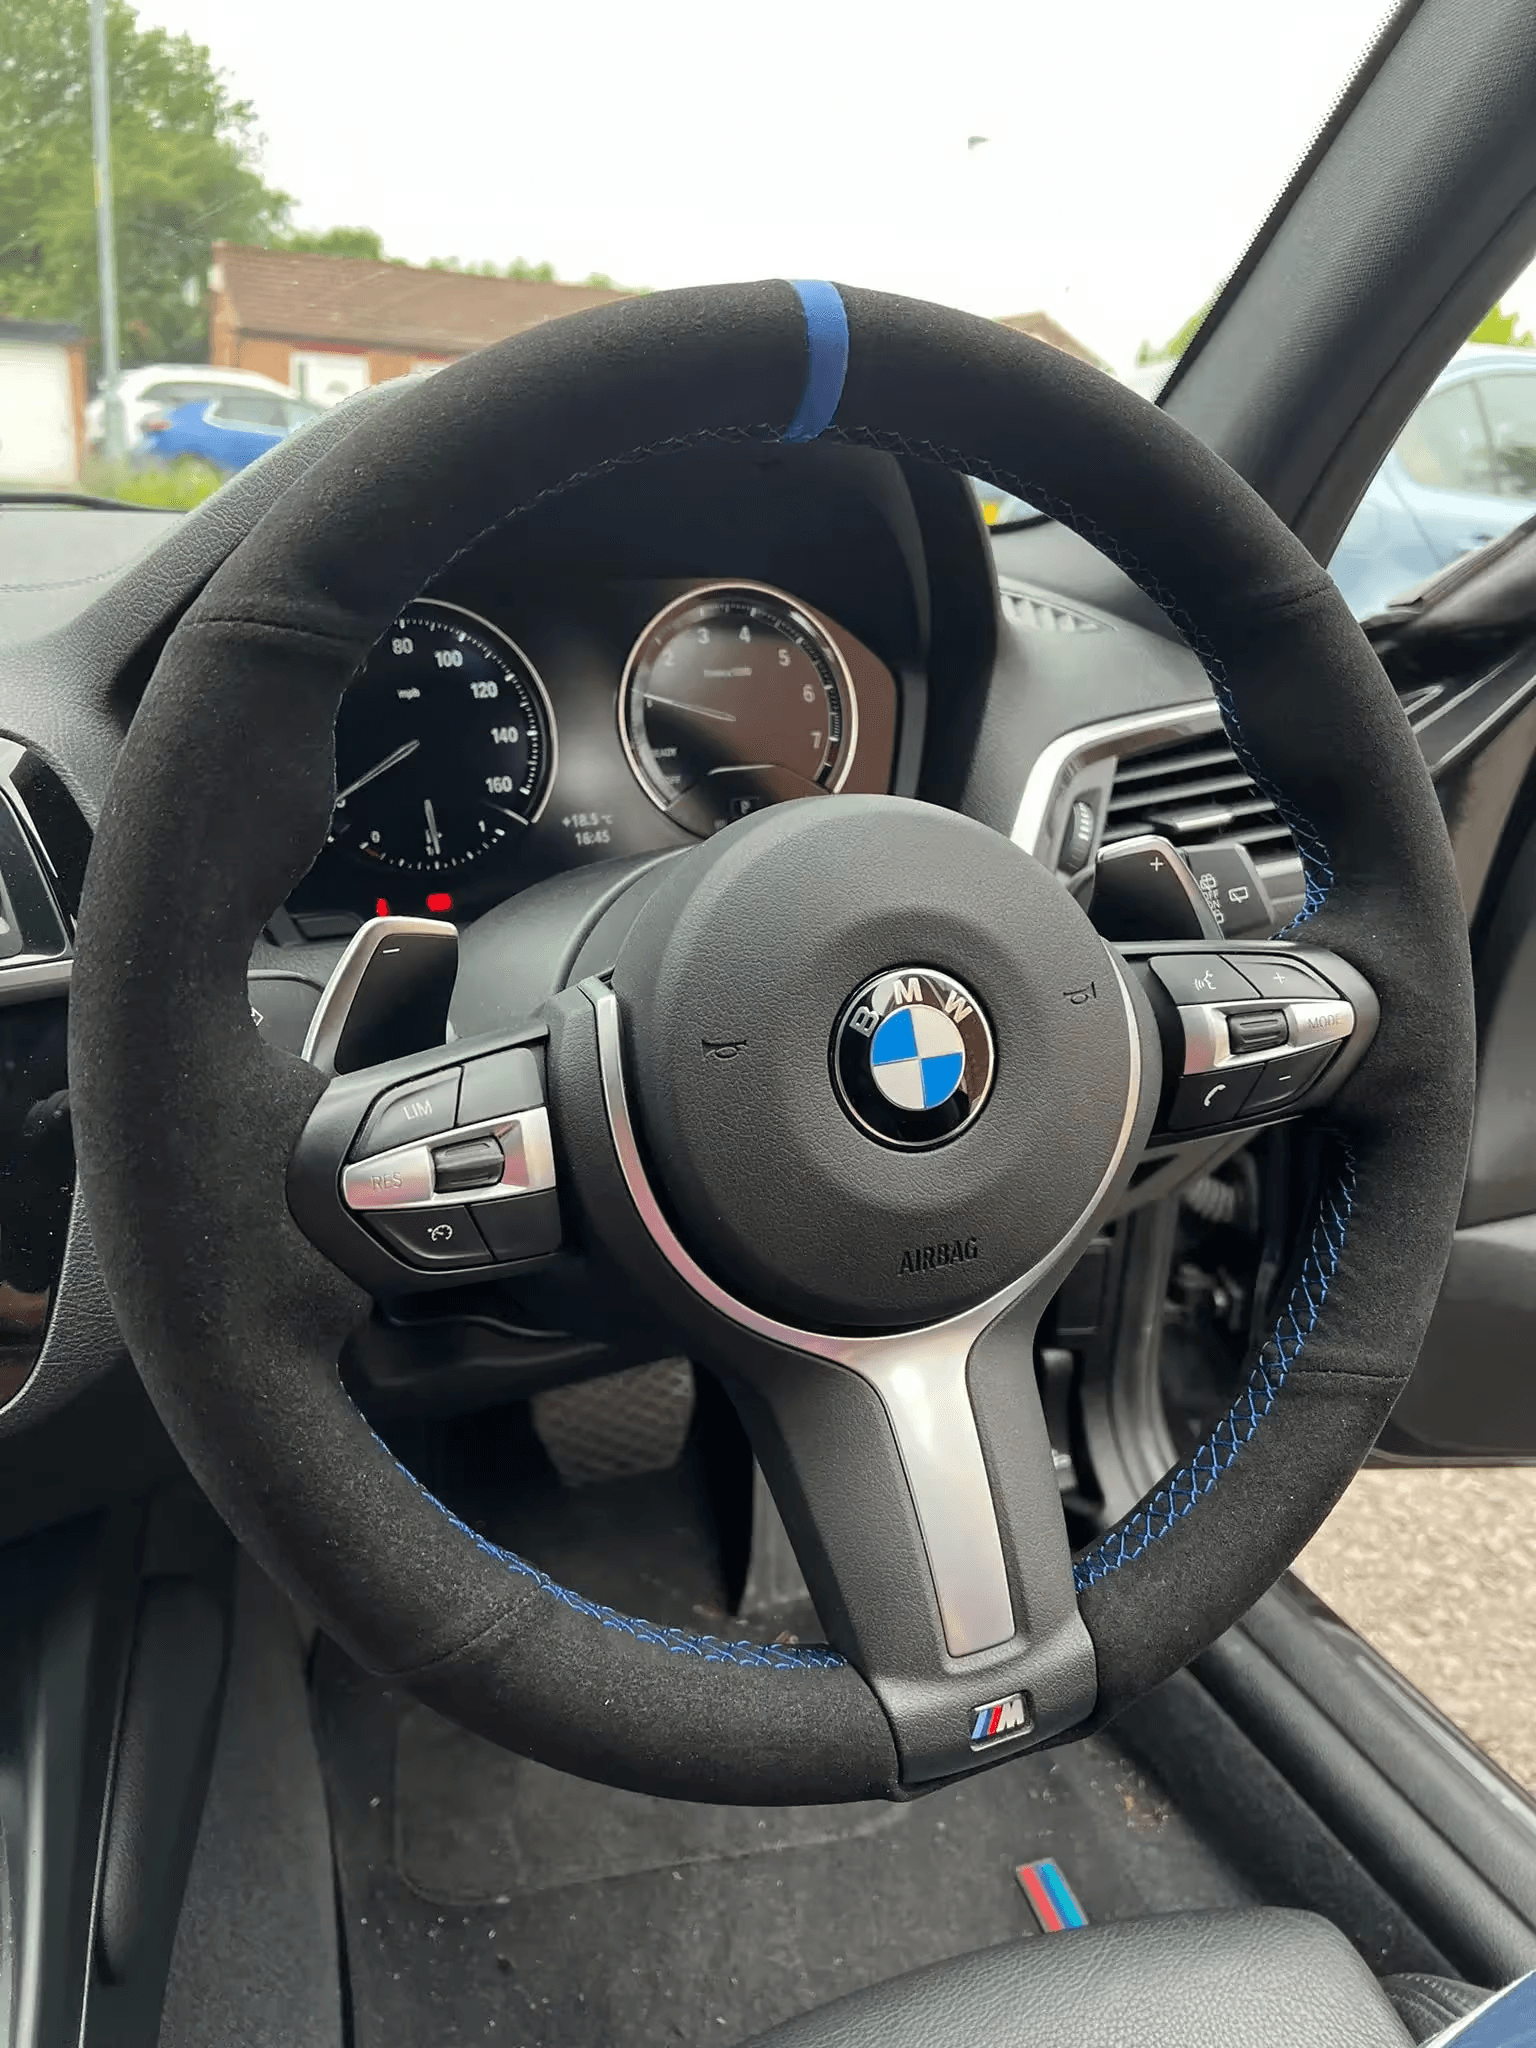 BMW Steering Wheel Covers